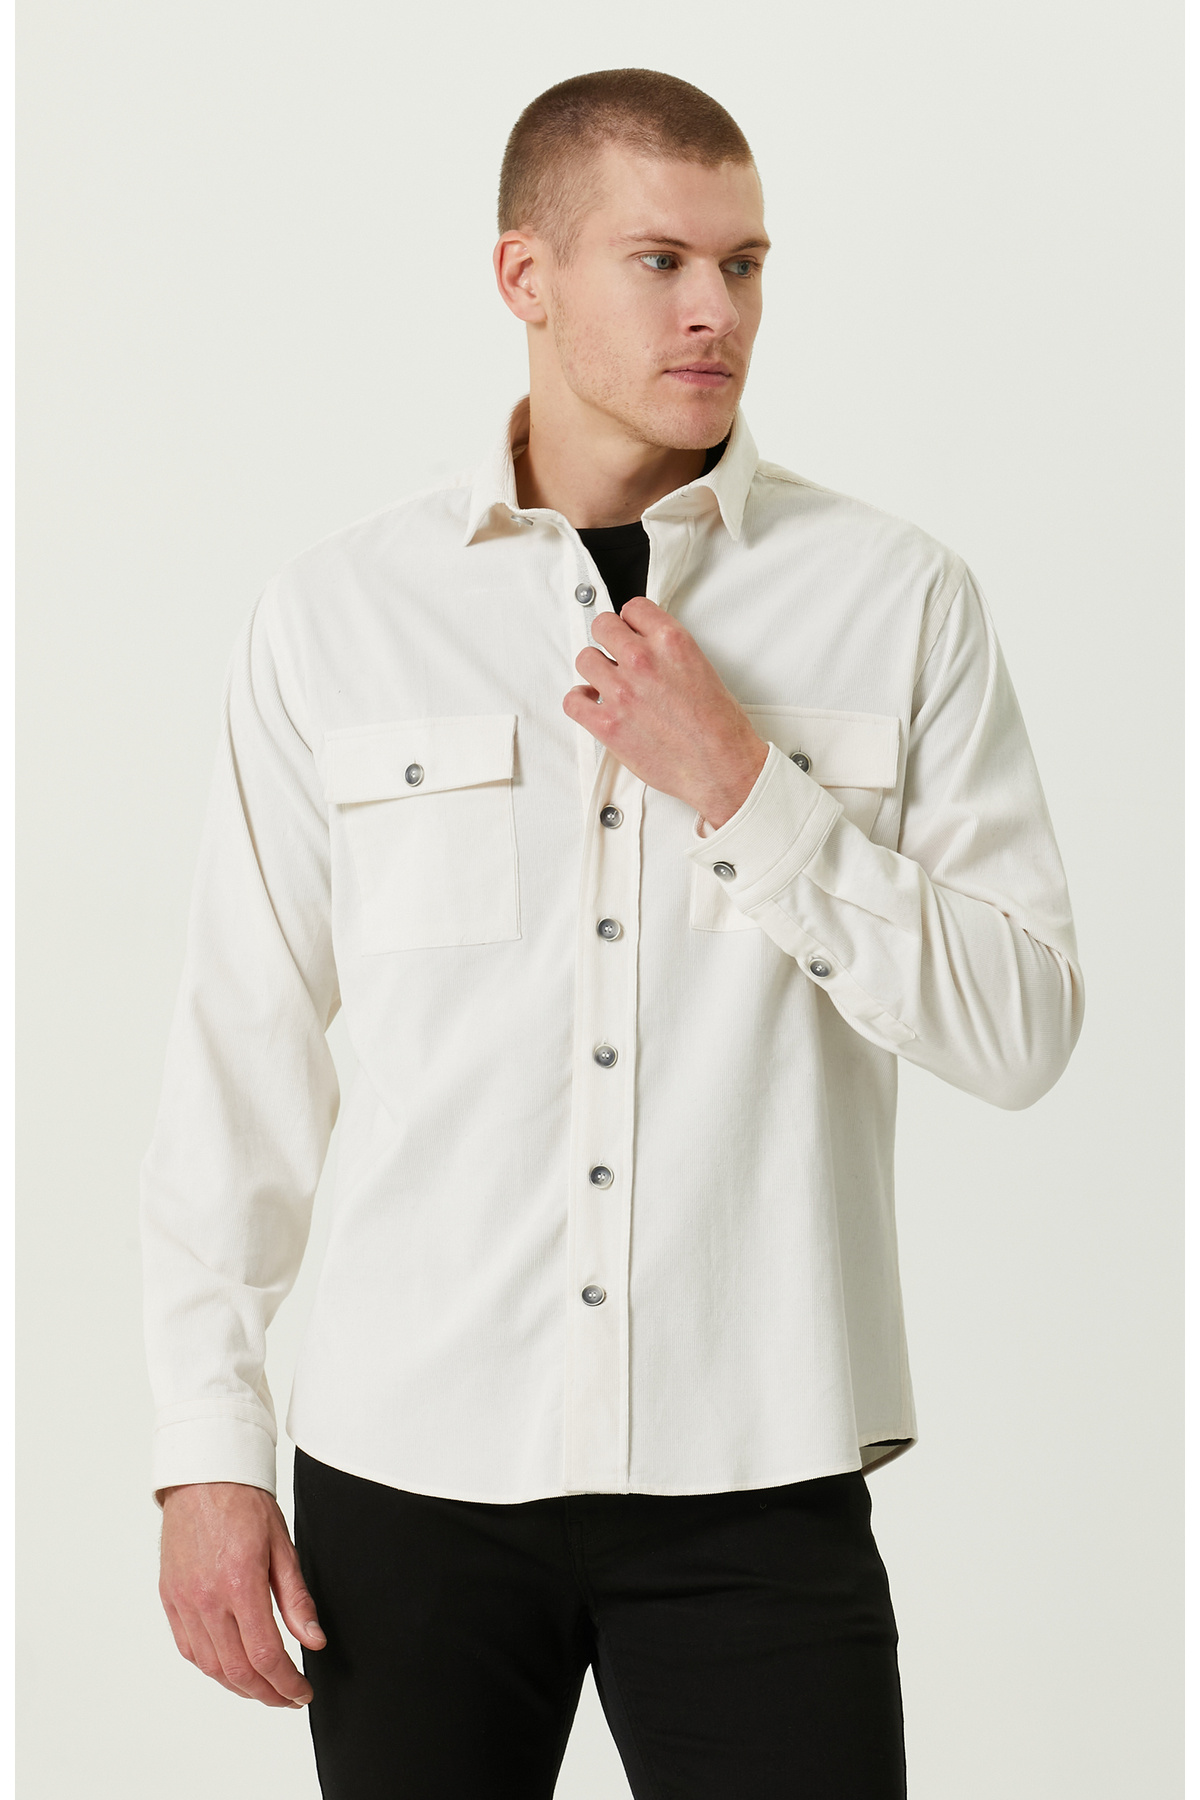 Бархатная рубашка с карманами цвета экрю Network, экрю